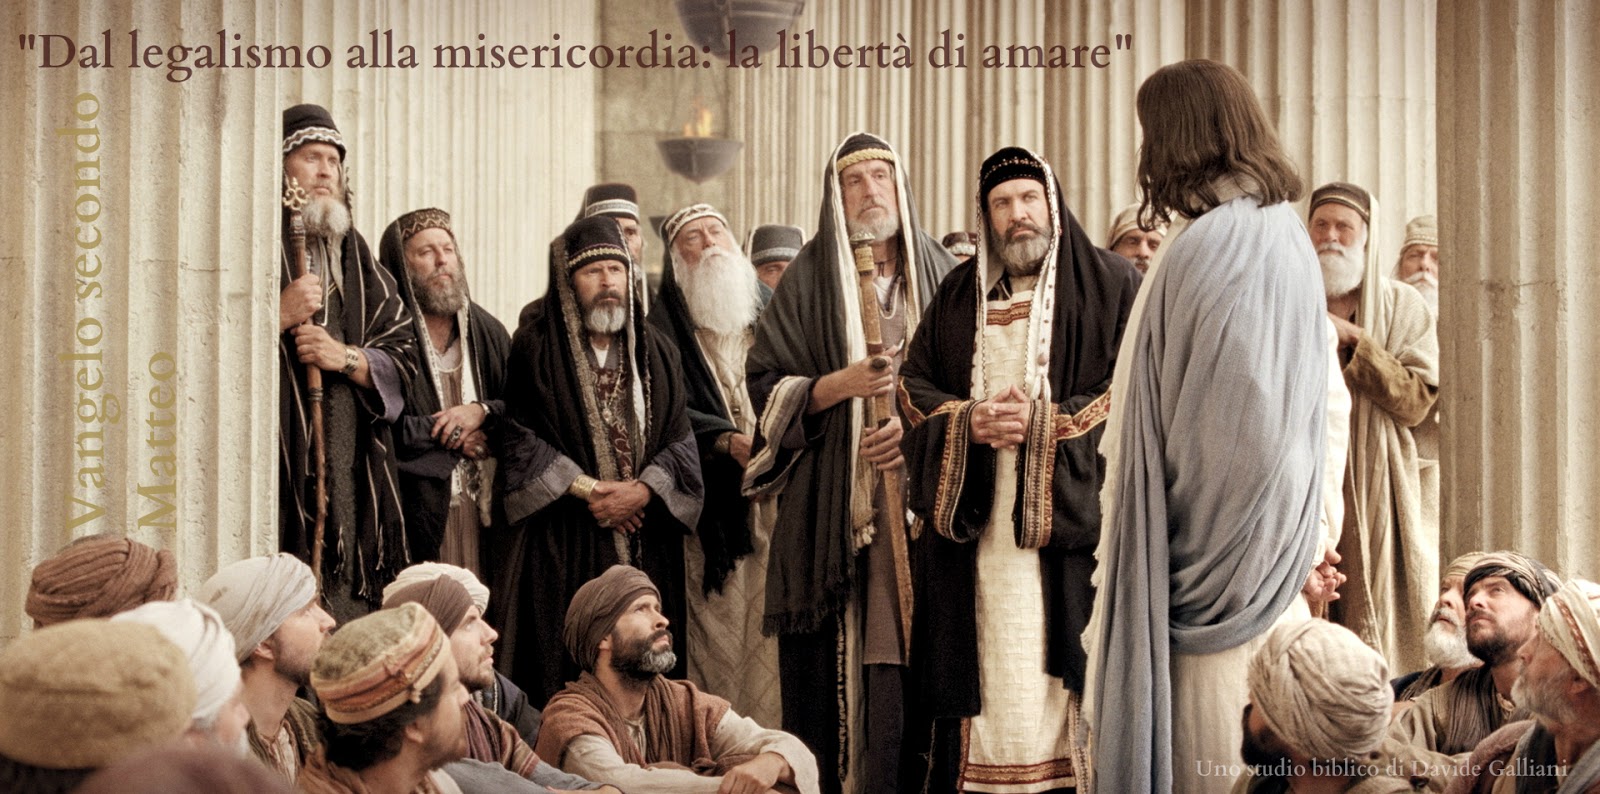 Davide Galliani: Gesù e i farisei, nel Vangelo secondo Matteo